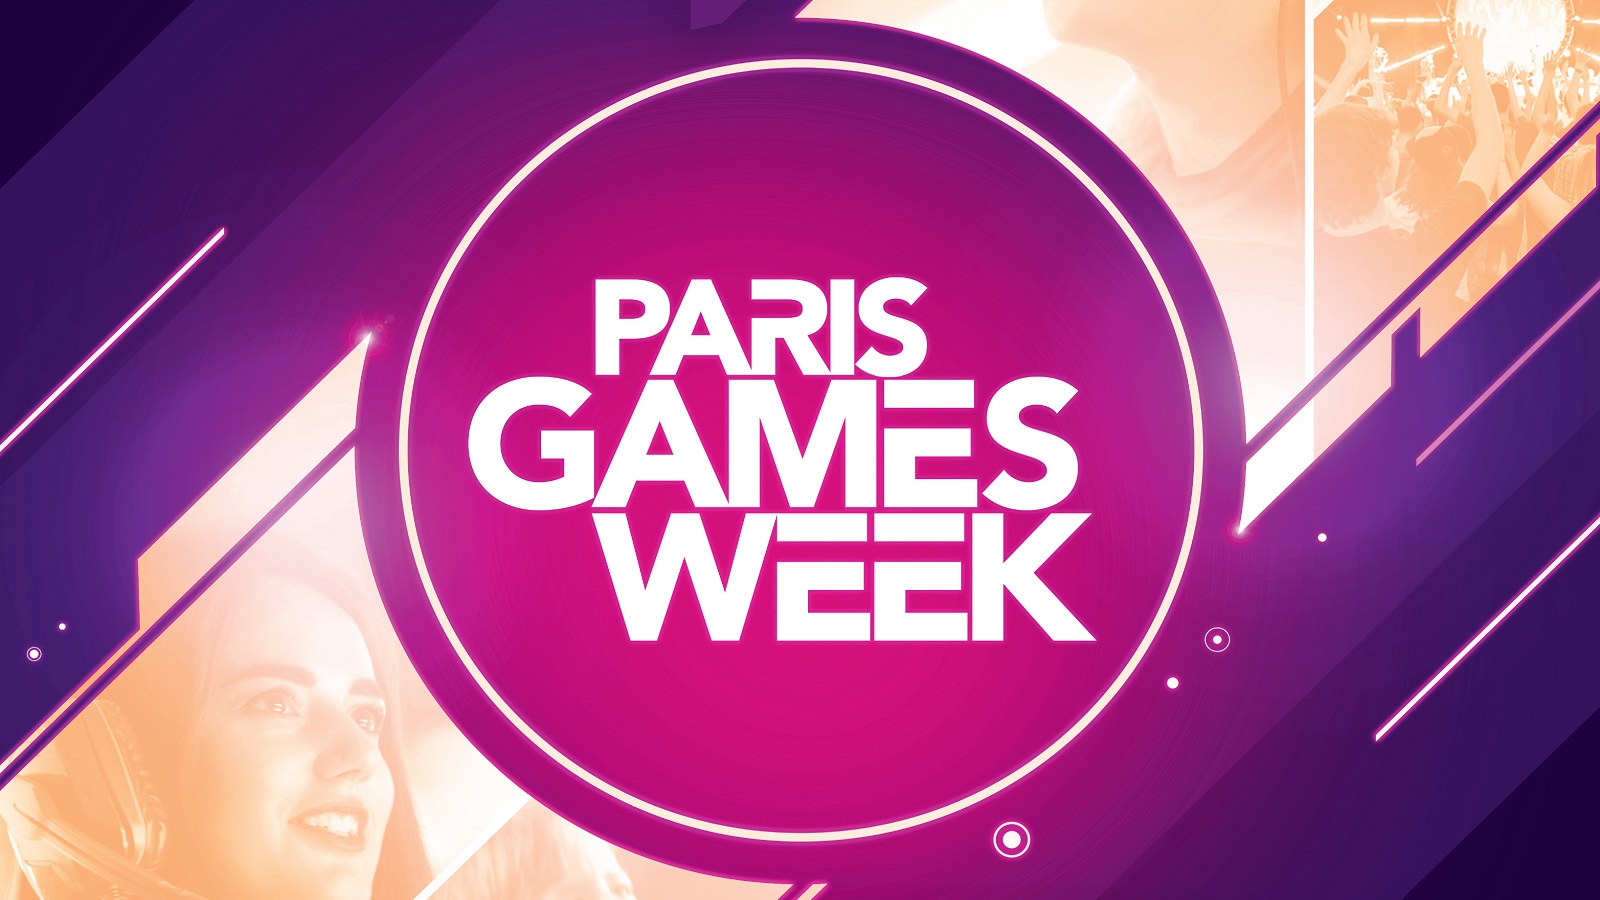 La Paris Games Week 2020 finalement annulée